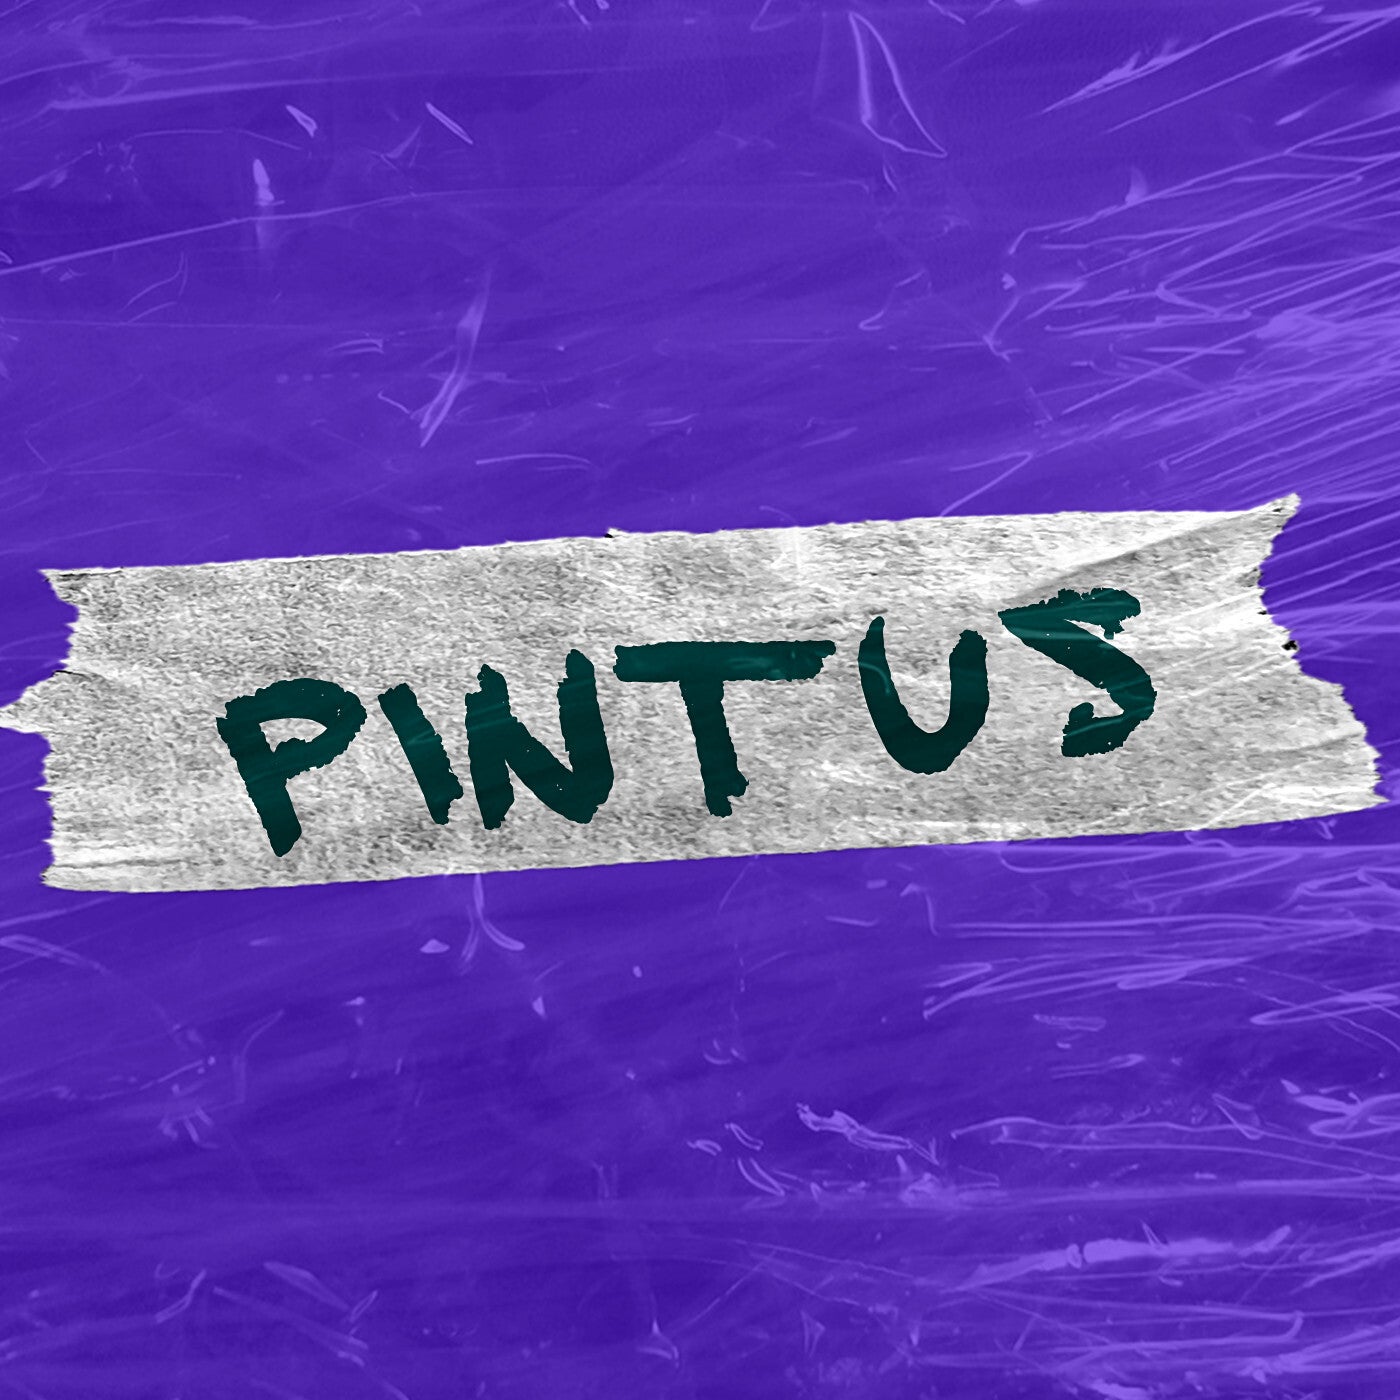 Cover - Jholeyson - Pintus (Original Mix)